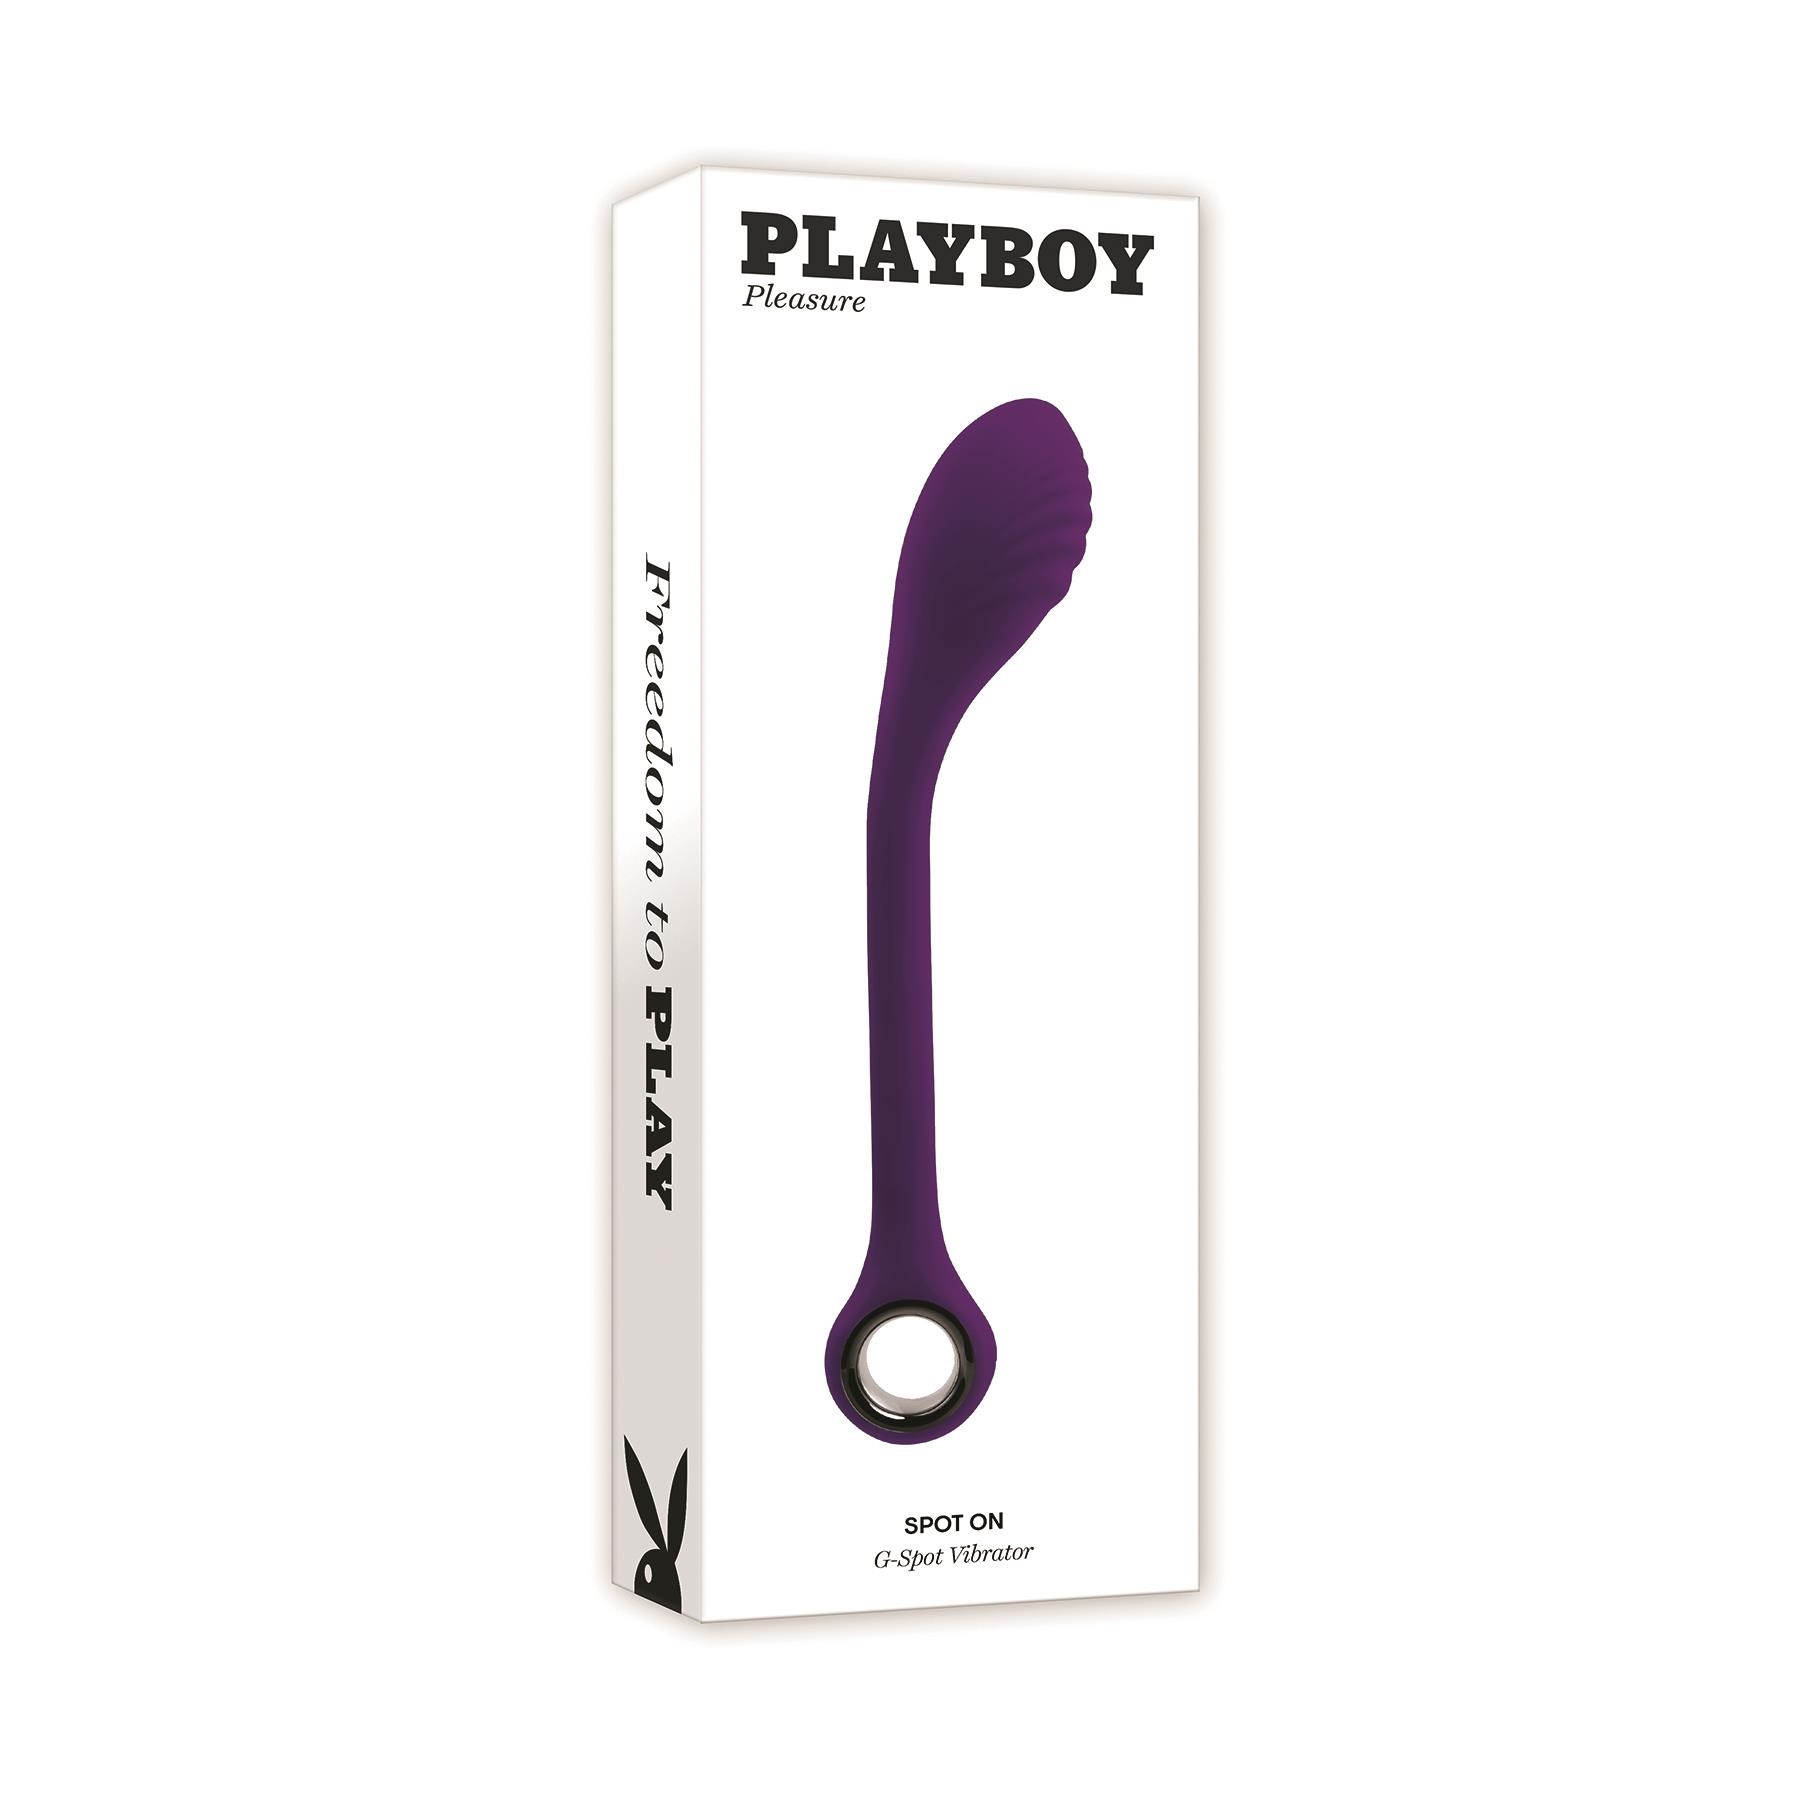 Playboy Pleasure Spot On G-Spot Massager - Packaging